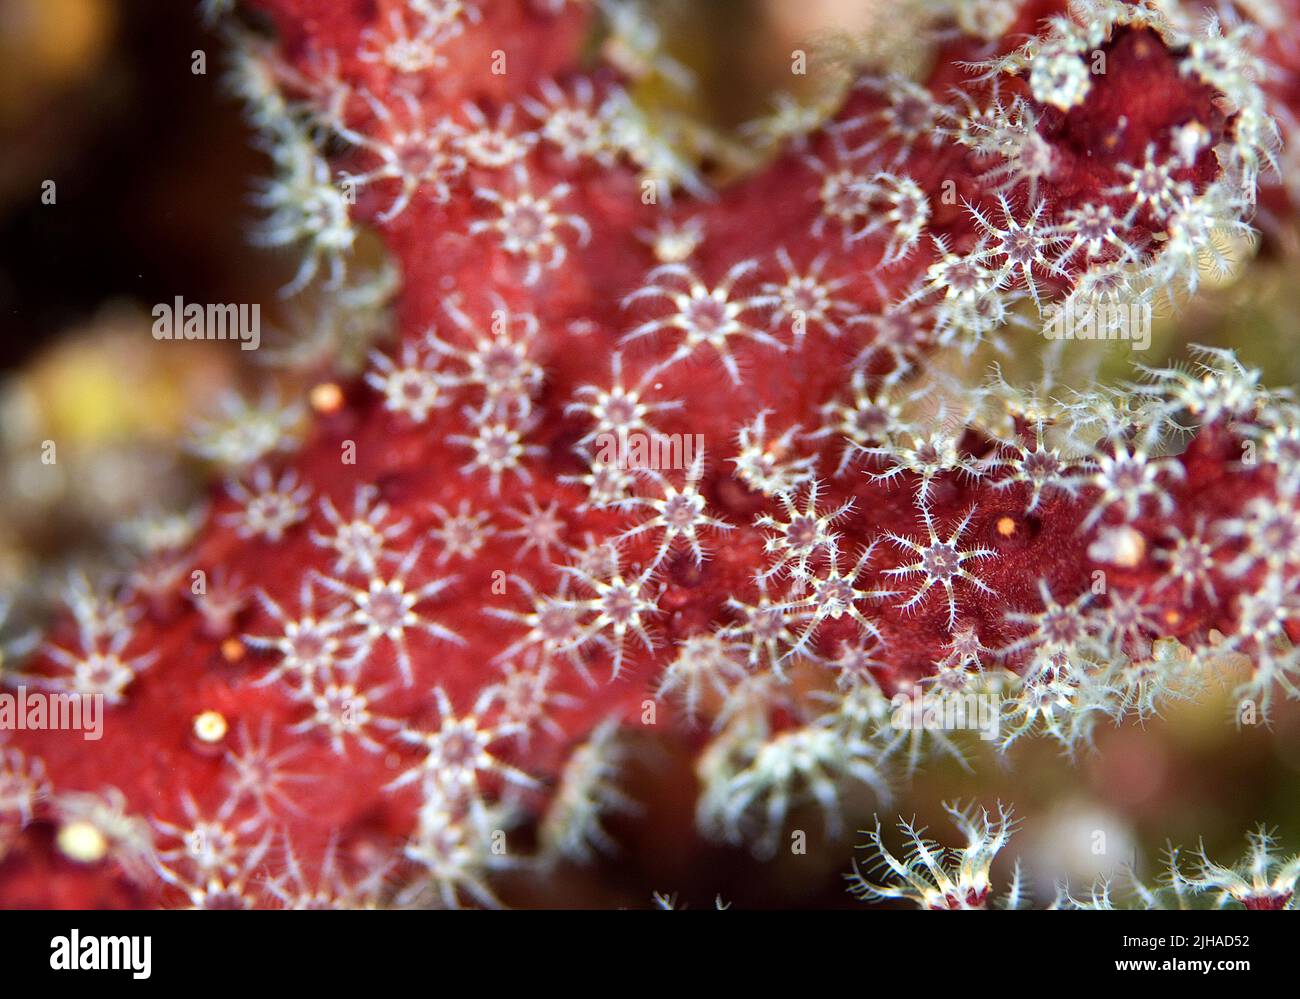 Red Dead man's Fingers - Alcyonium palmatum, wunderschöne rote Weichkorallen aus den Mittelmeer-Riffen, Insel Pag, Kroatien. Stockfoto